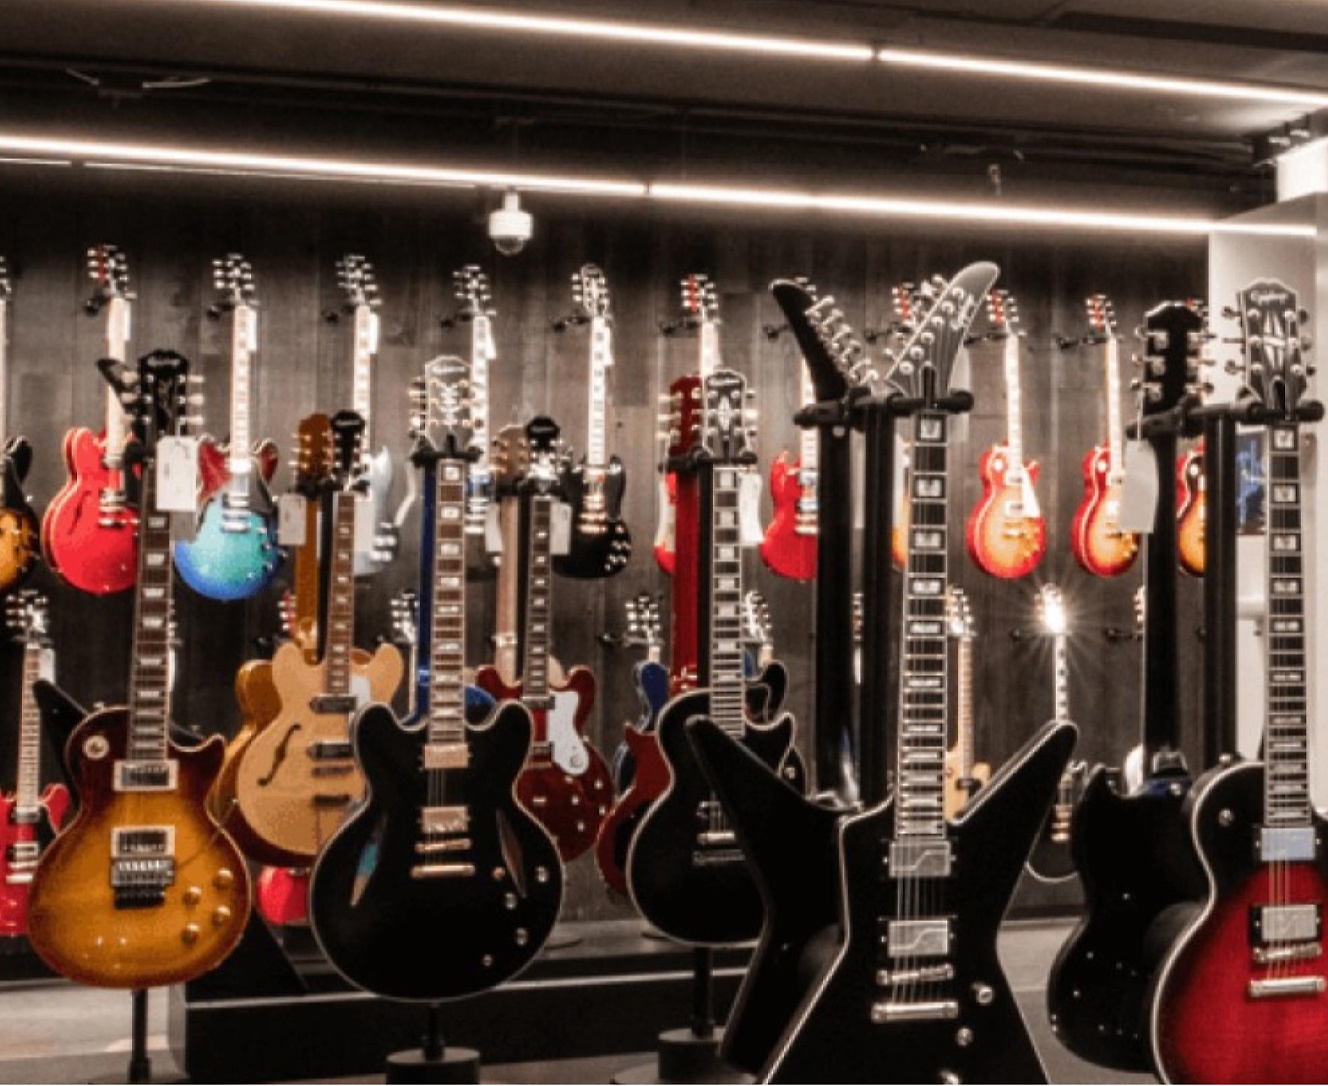 גיטרות רבות מוצגות בחנות.